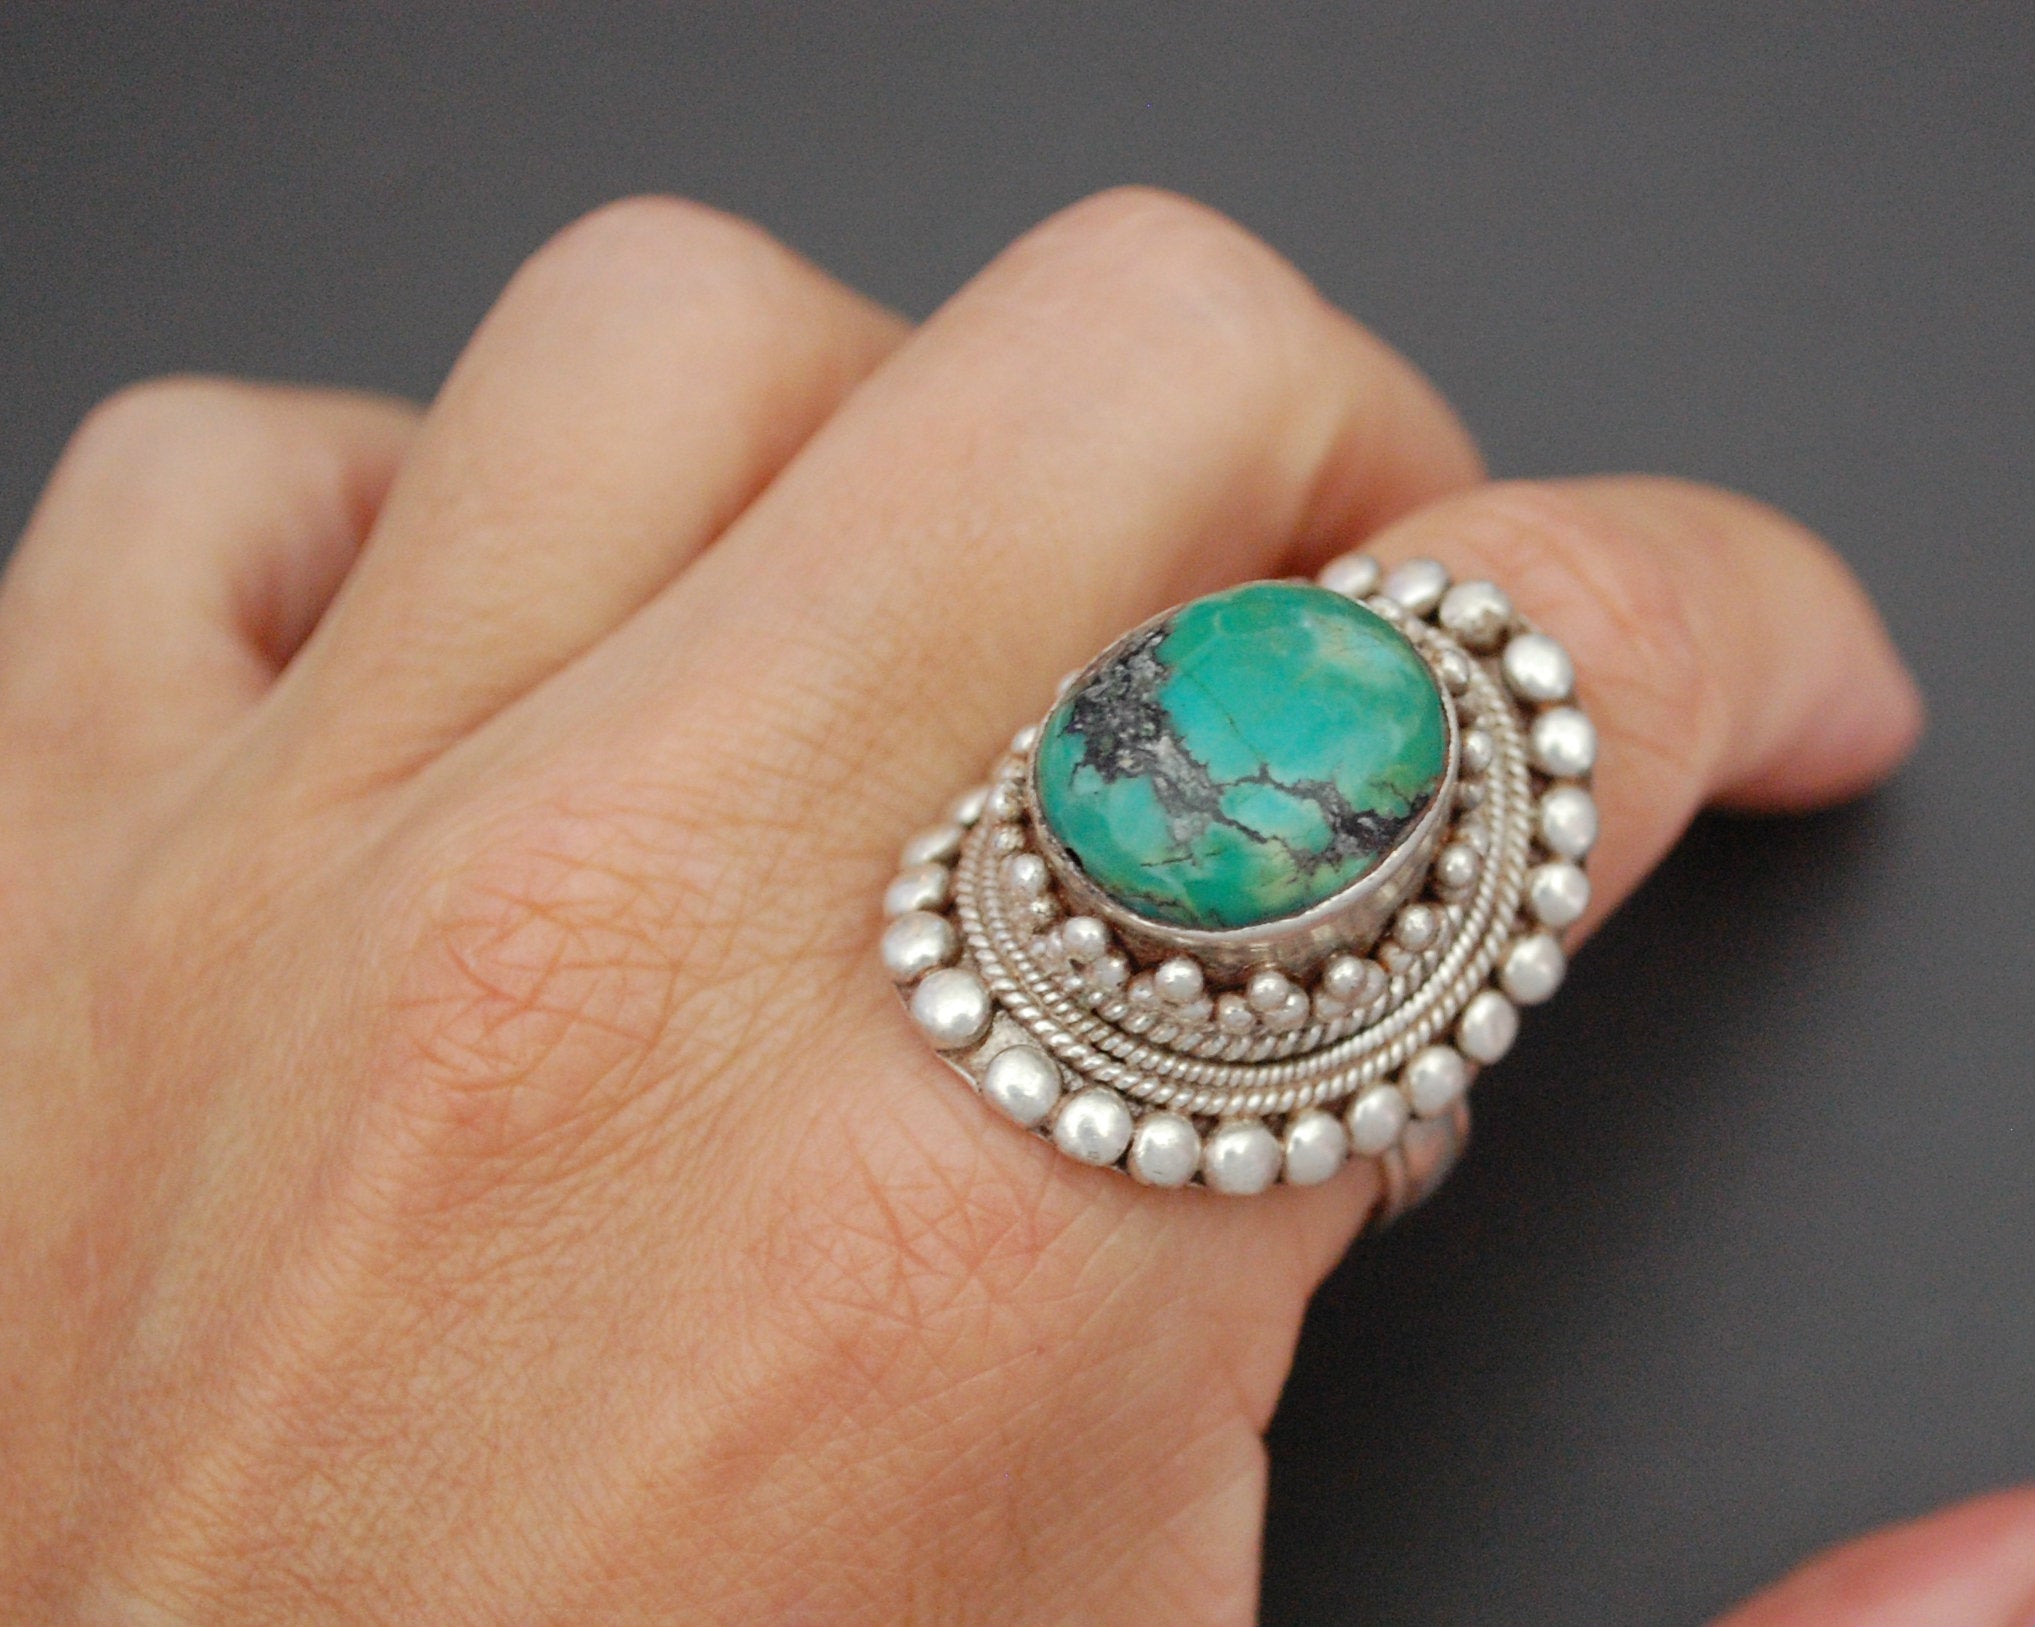 Large Nepali Turquoise Ring - Size 11